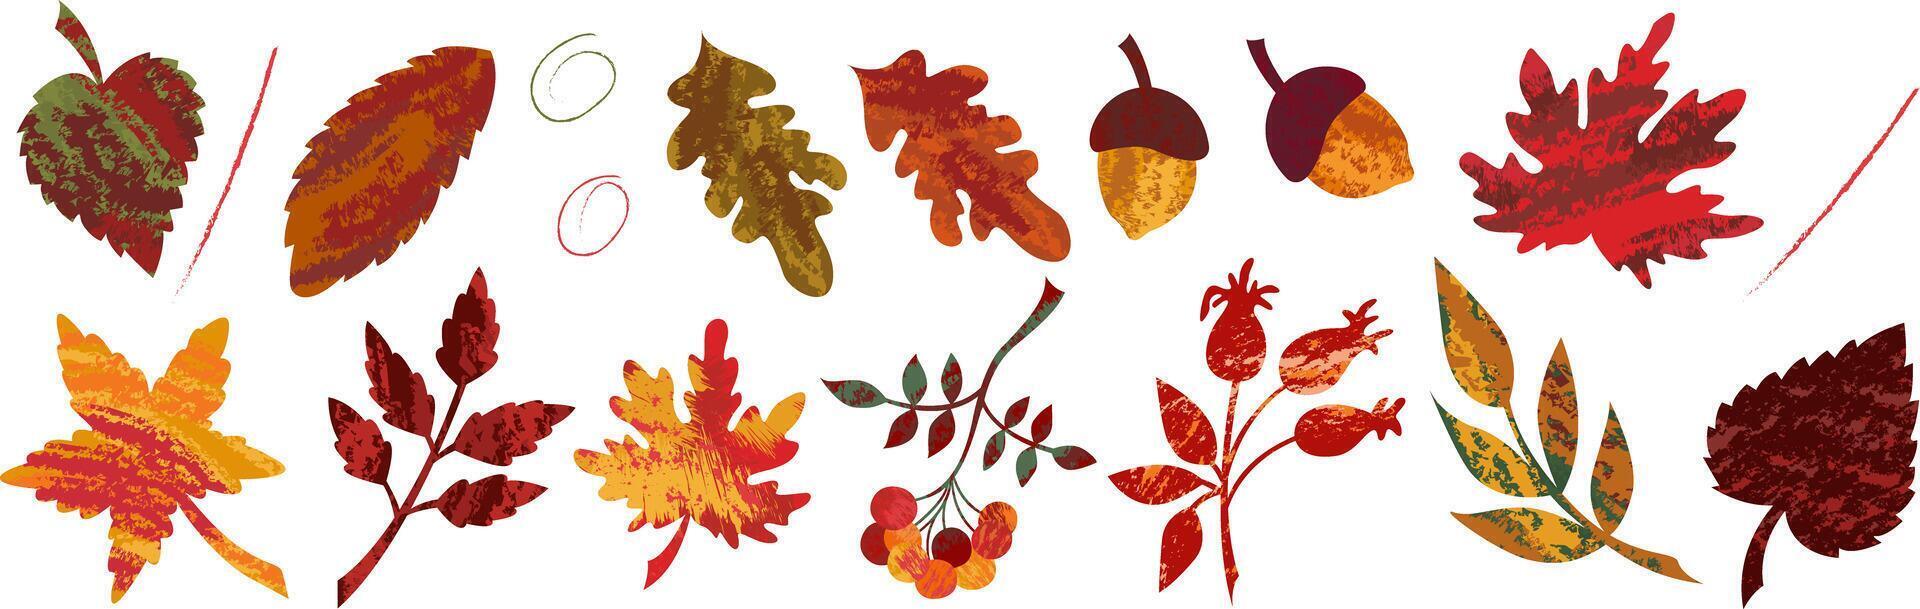 otoño conjunto de aislado elementos de resumen textura hojas de arce, roble y serbal bayas. textura dibujado a mano estacional ilustraciones para otoño Días festivos diseño. vector